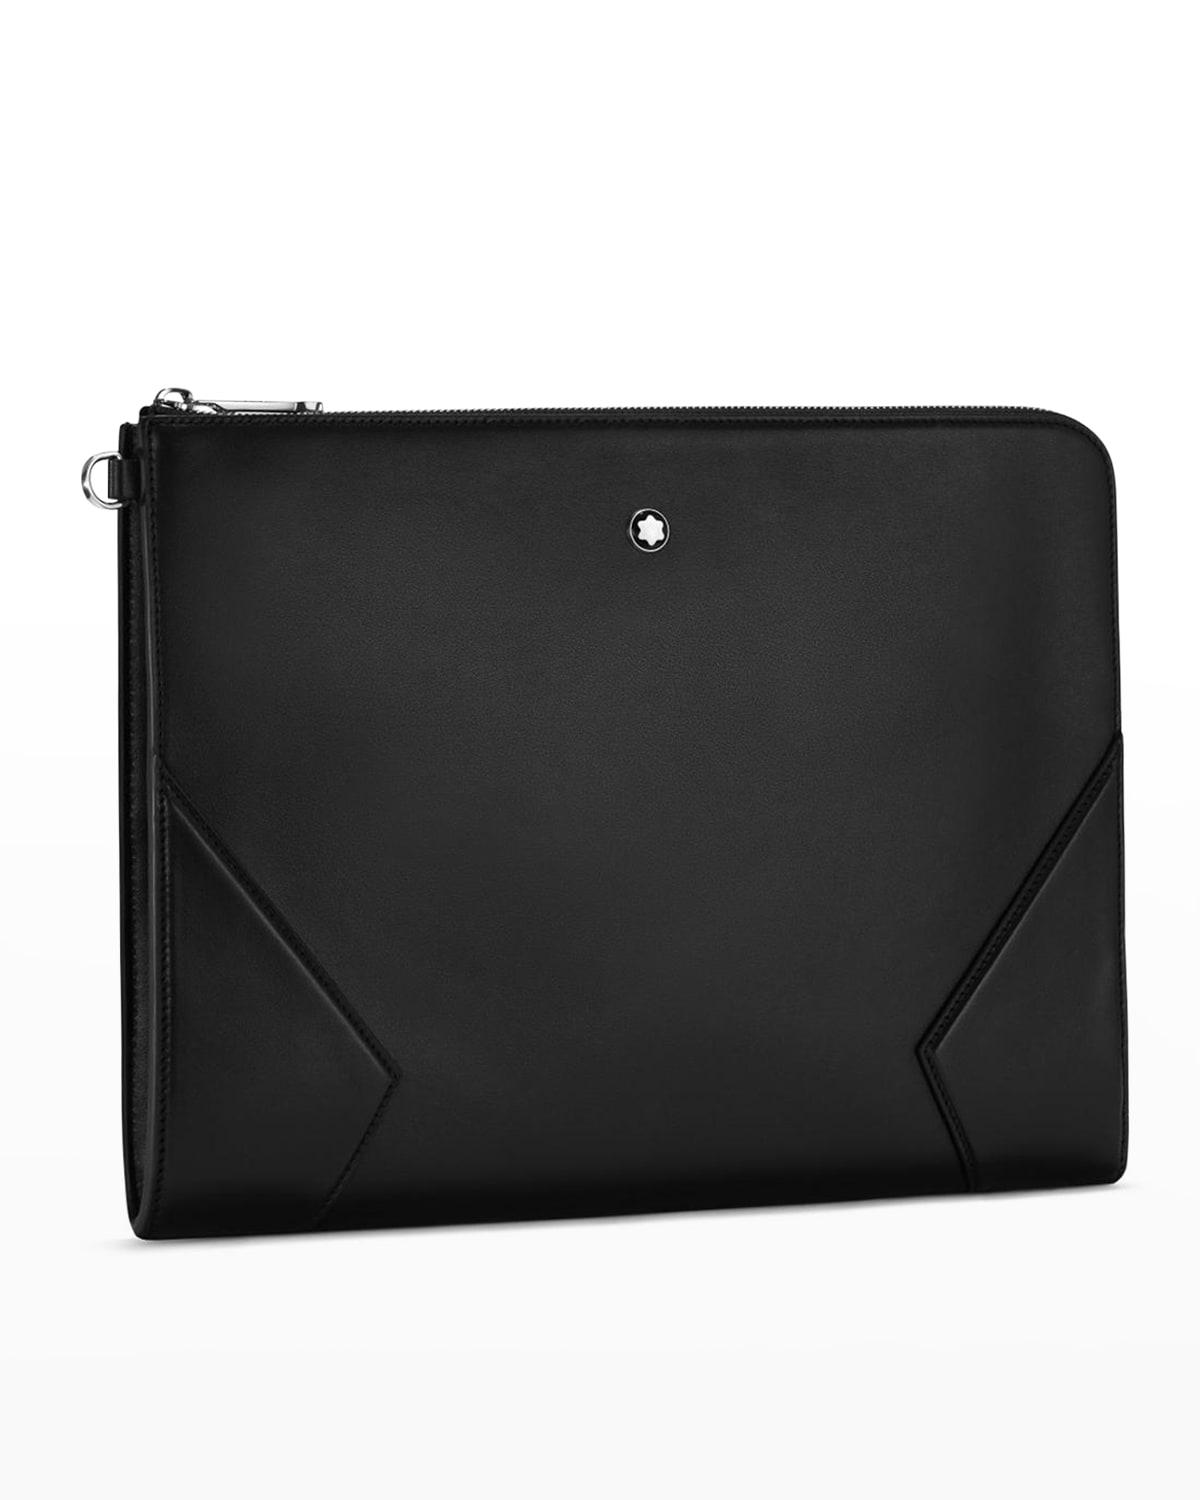 Montblanc Meisterstück Portfolio Leather Zip Clutch Bag in Black for ...